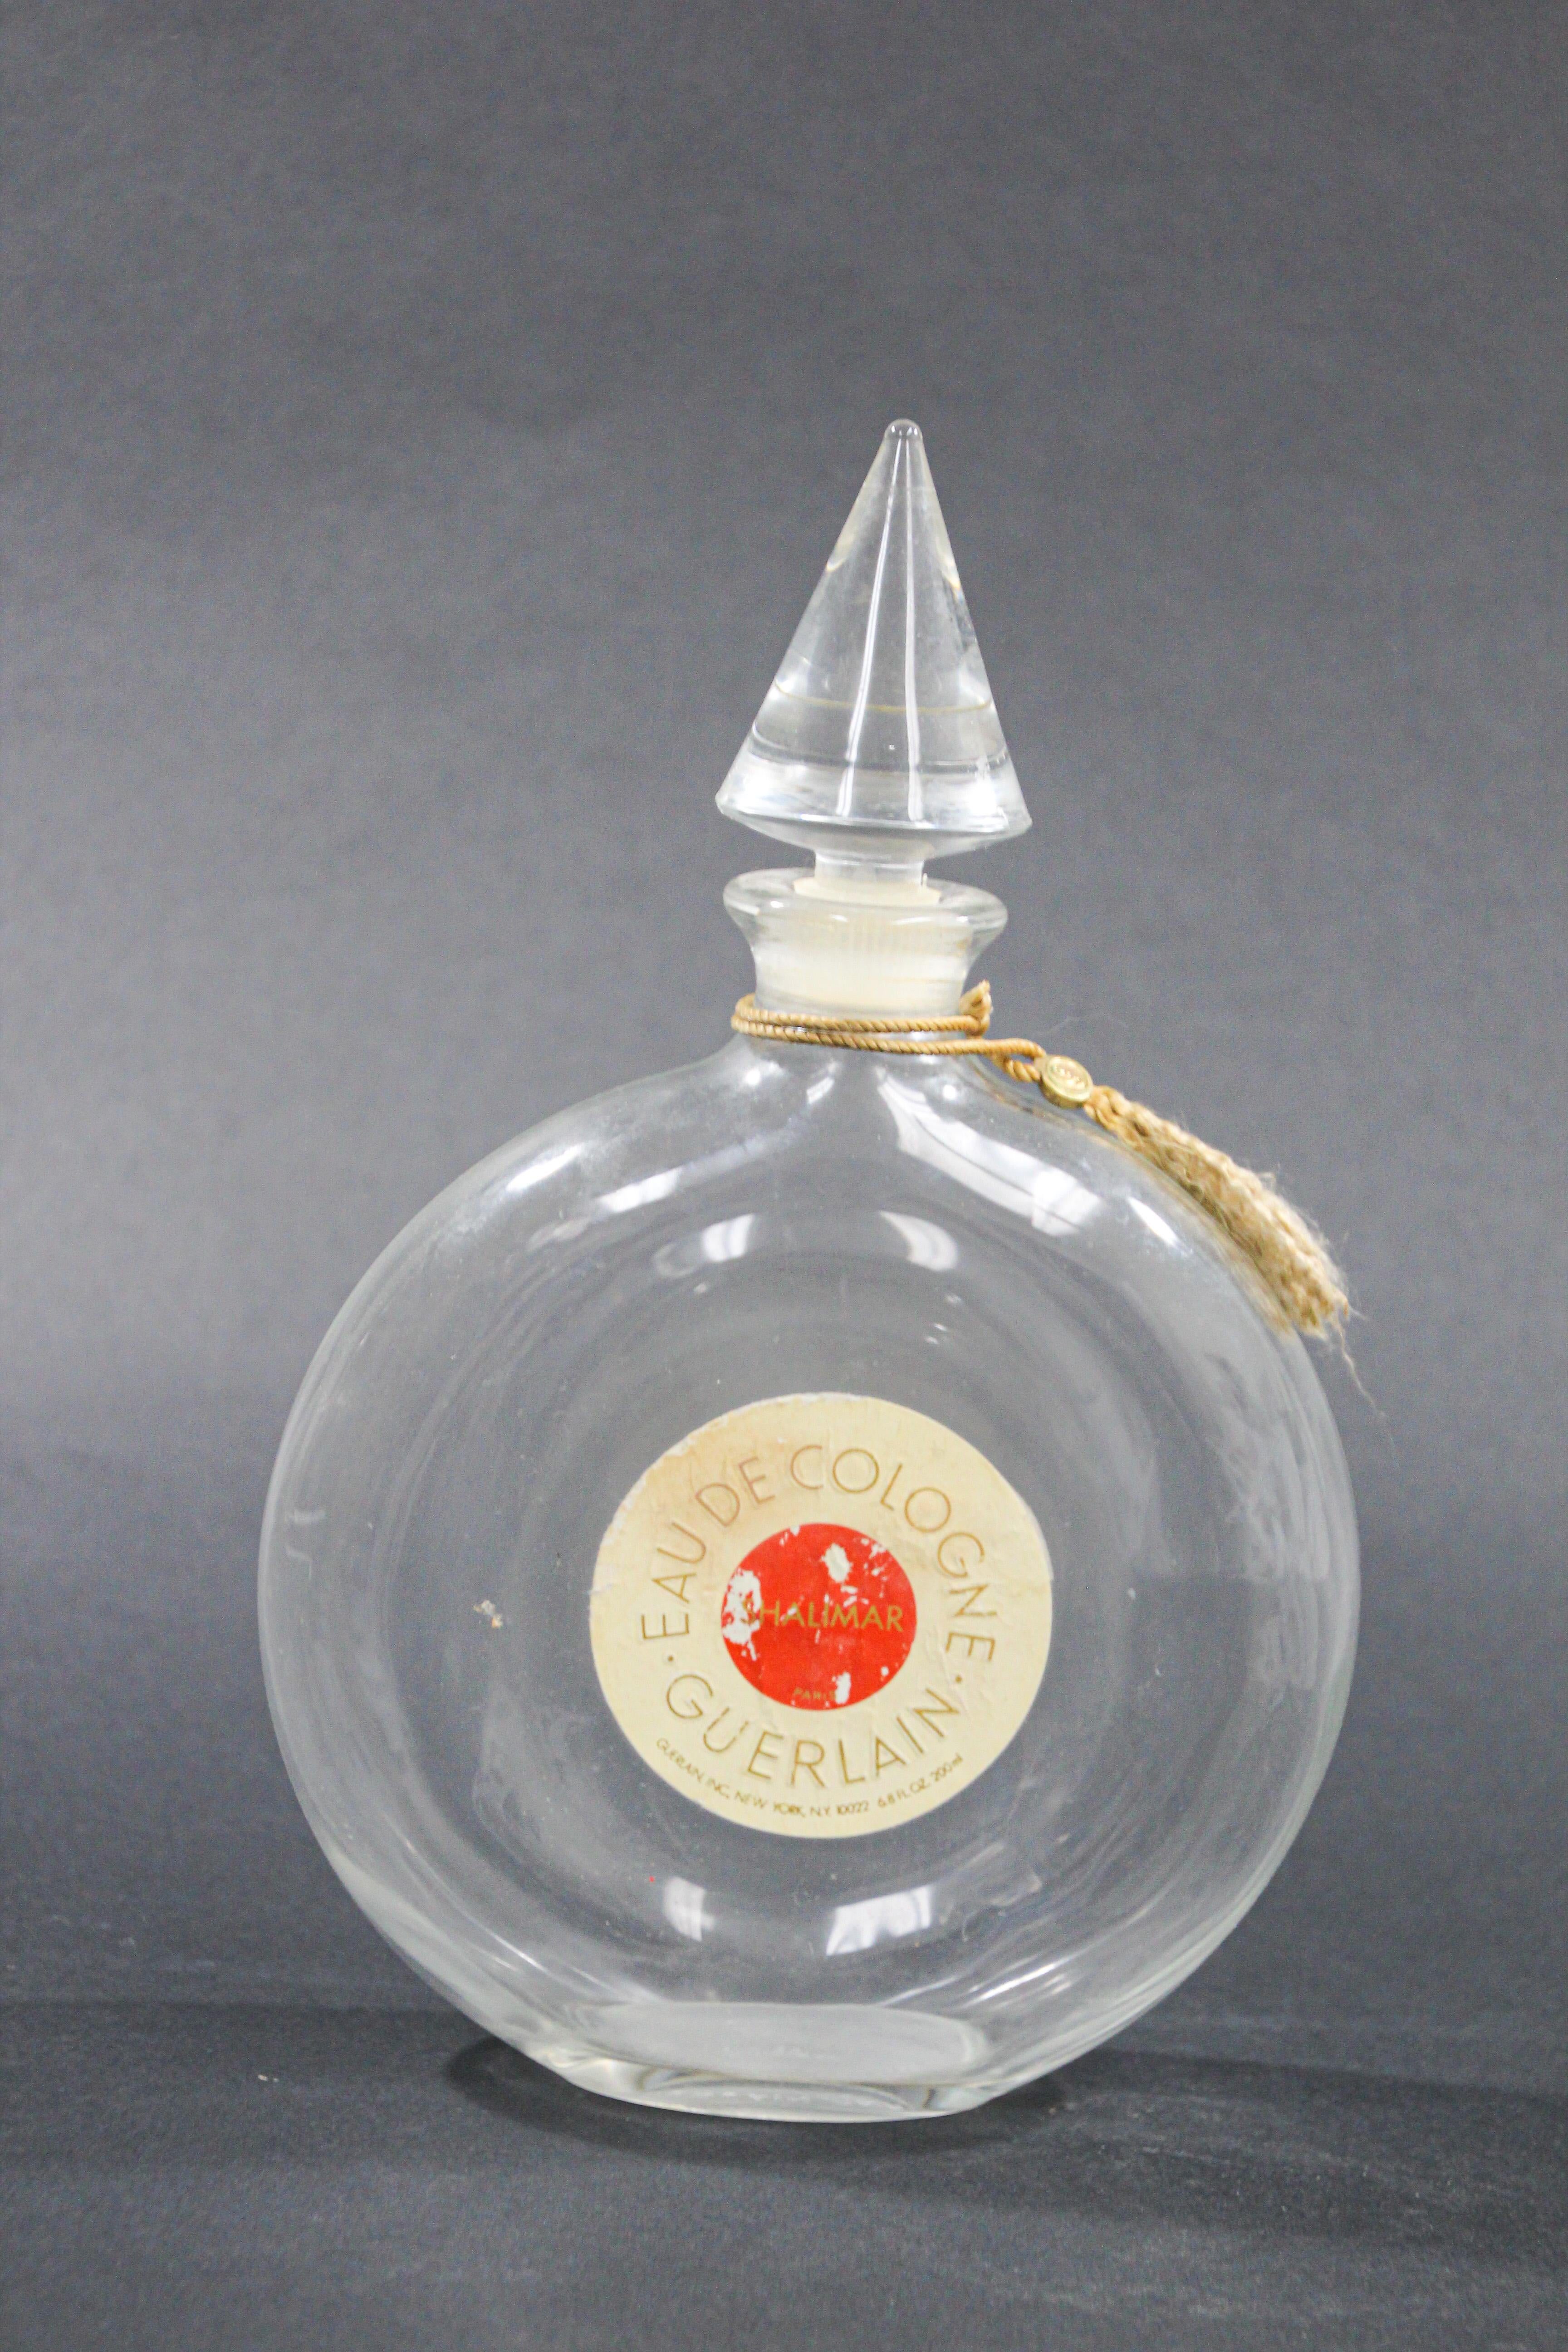 Große Vintage Sammlerstück Guerlain Shalimar Eau de Cologne Parfümflasche.
Leere Sammlerflasche aus Glas mit dem berühmten Parfüm Shalimar.
Das Parfüm Shalimar wurde 1925 vom Parfümhaus Guerlain kreiert und wird als raffinierter orientalischer